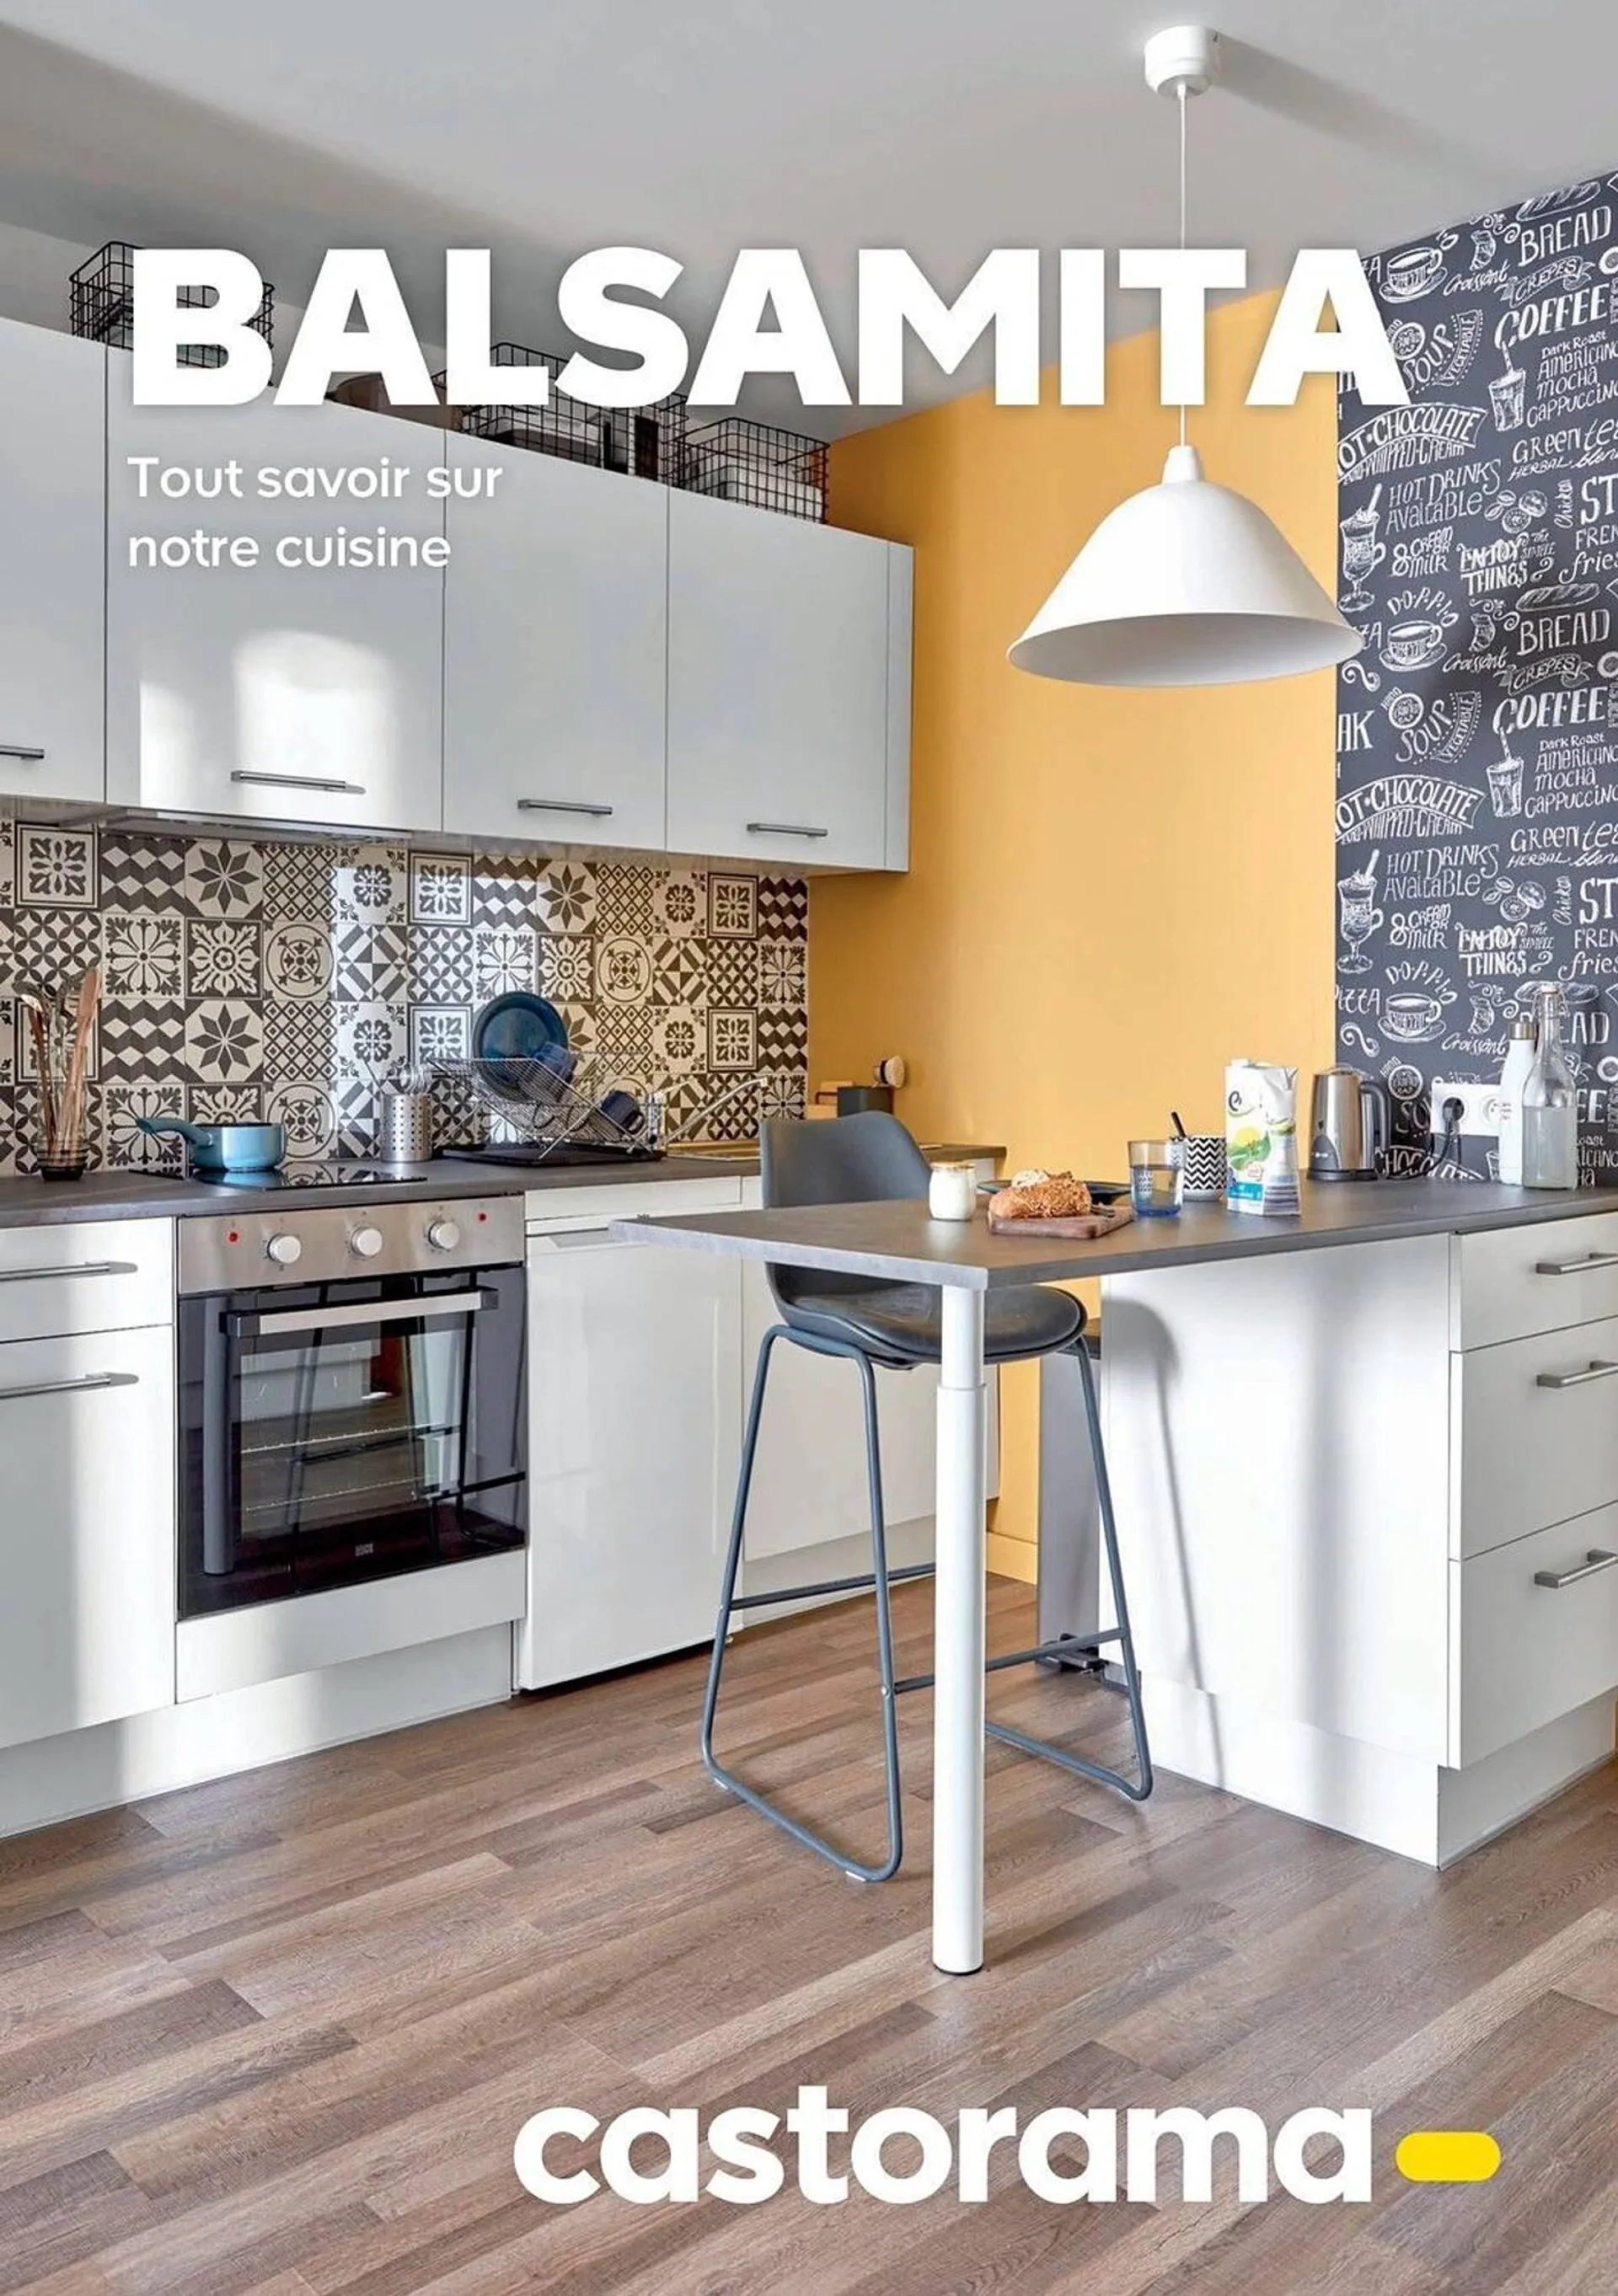 Catalogue Castorama - Balsamita - 1